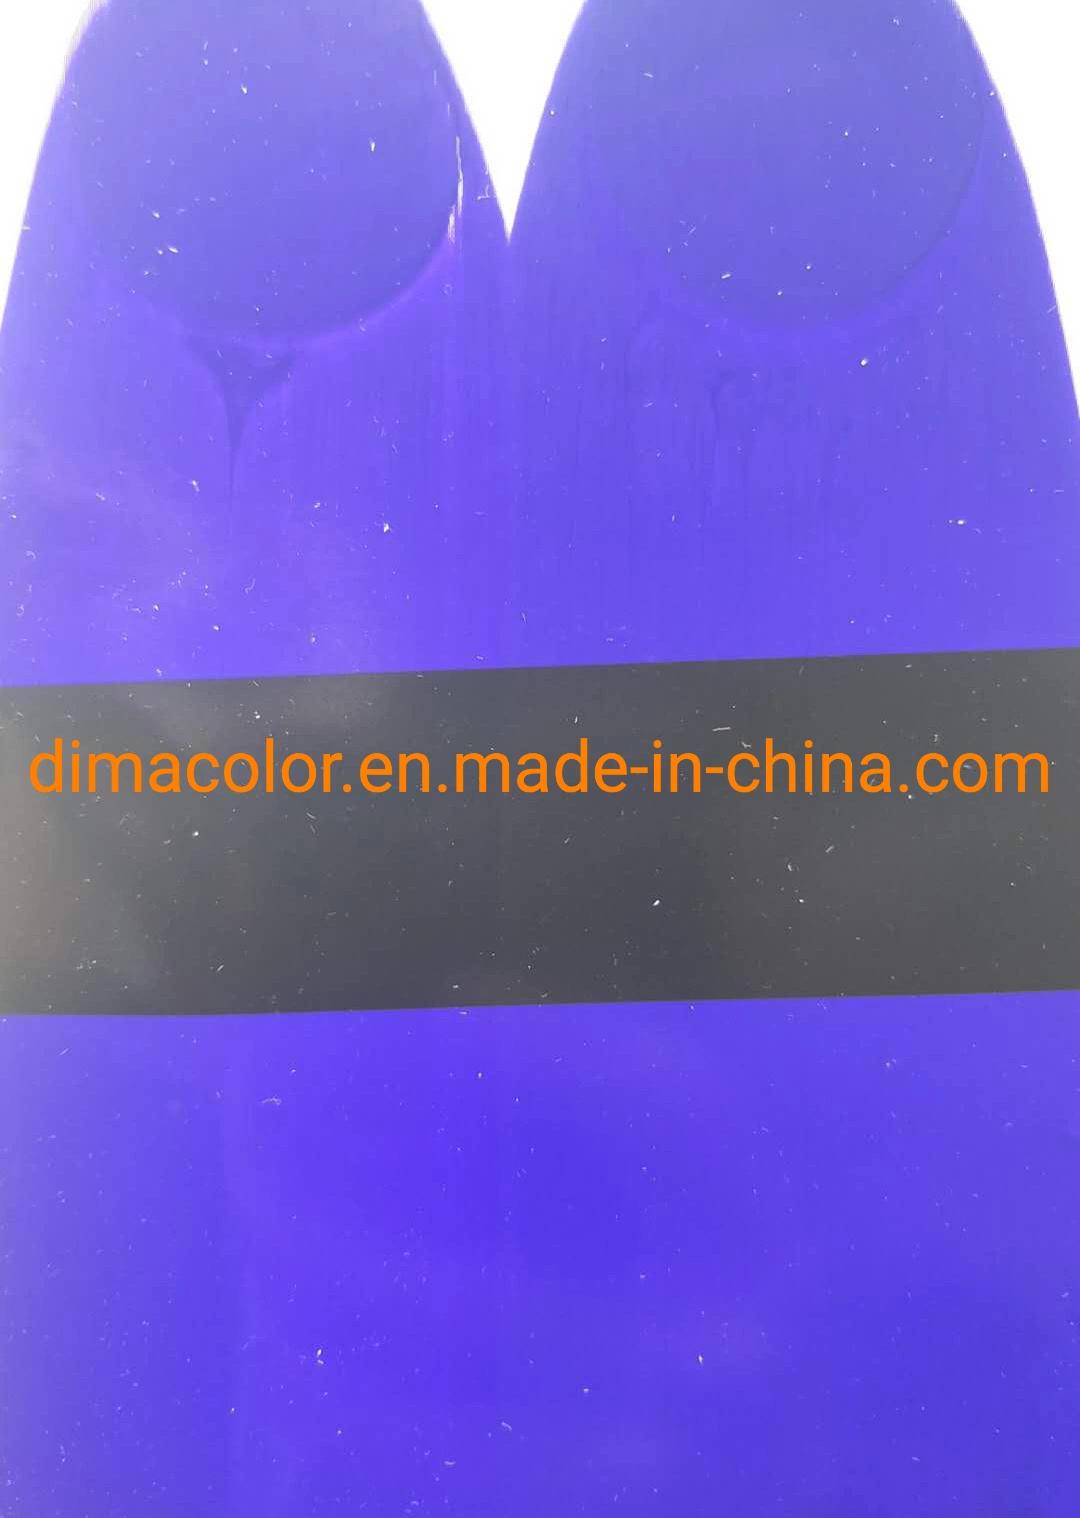 Pigment Violet 27 (FAST VIOLET TONER B) Water Base Ink Textile Printing